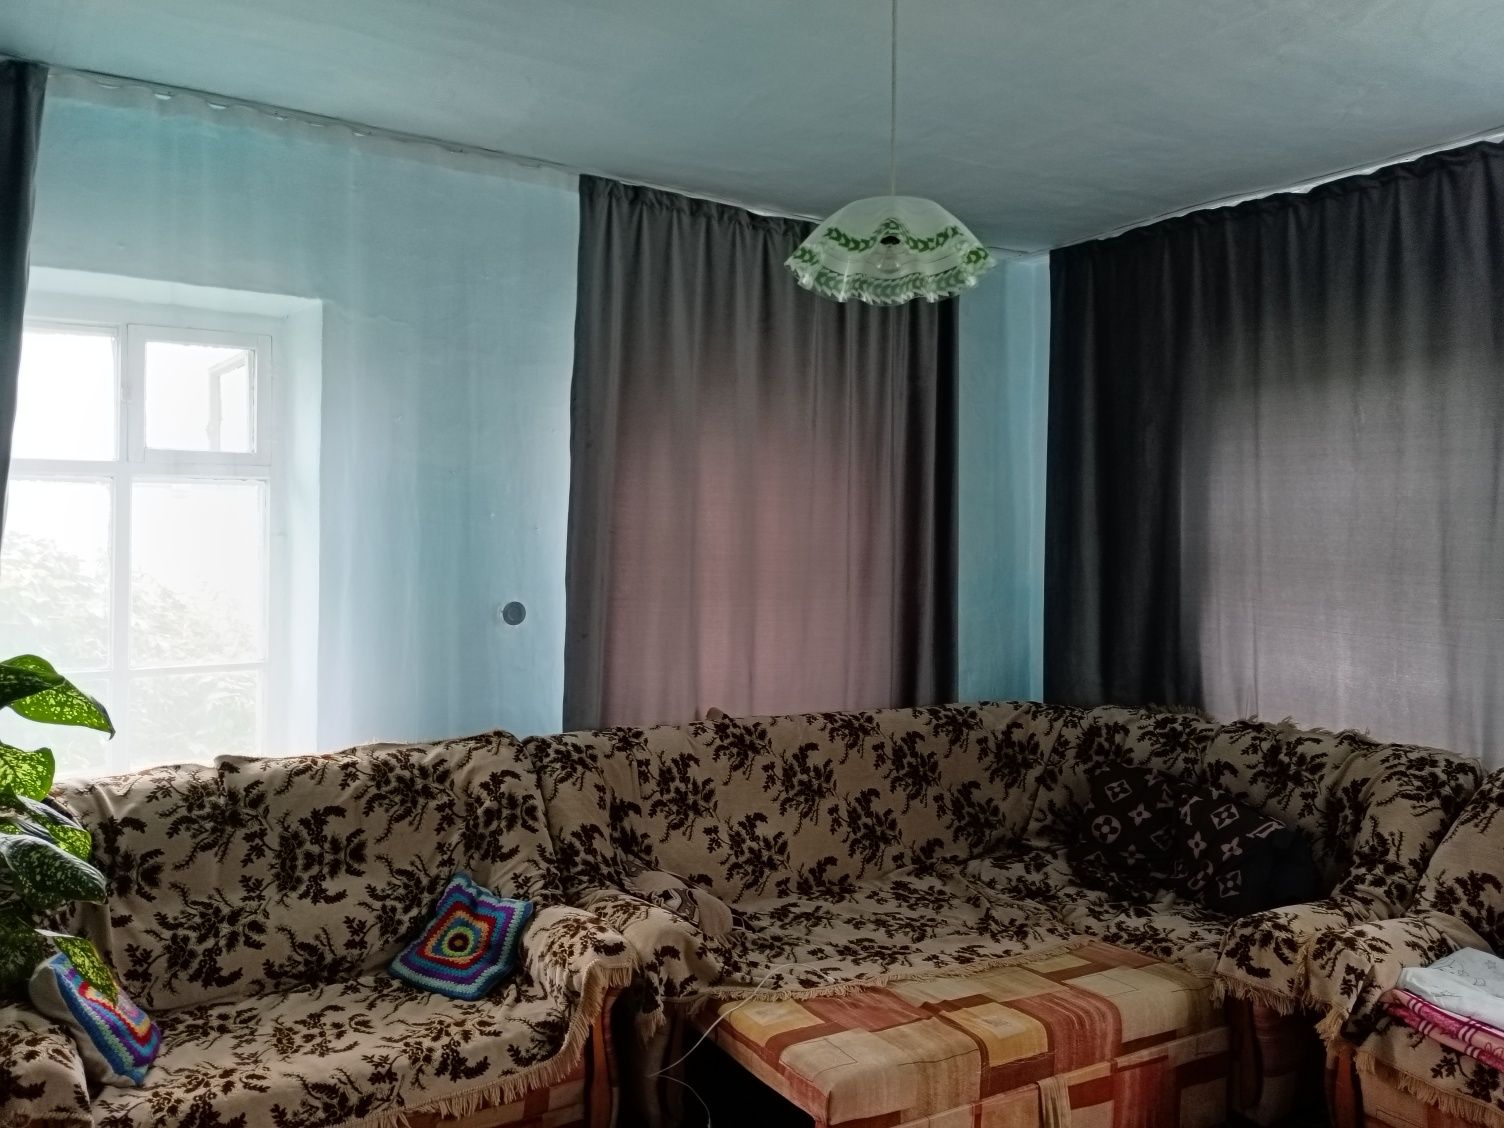 Обменяю дом на квартиру в п. Белоусовка